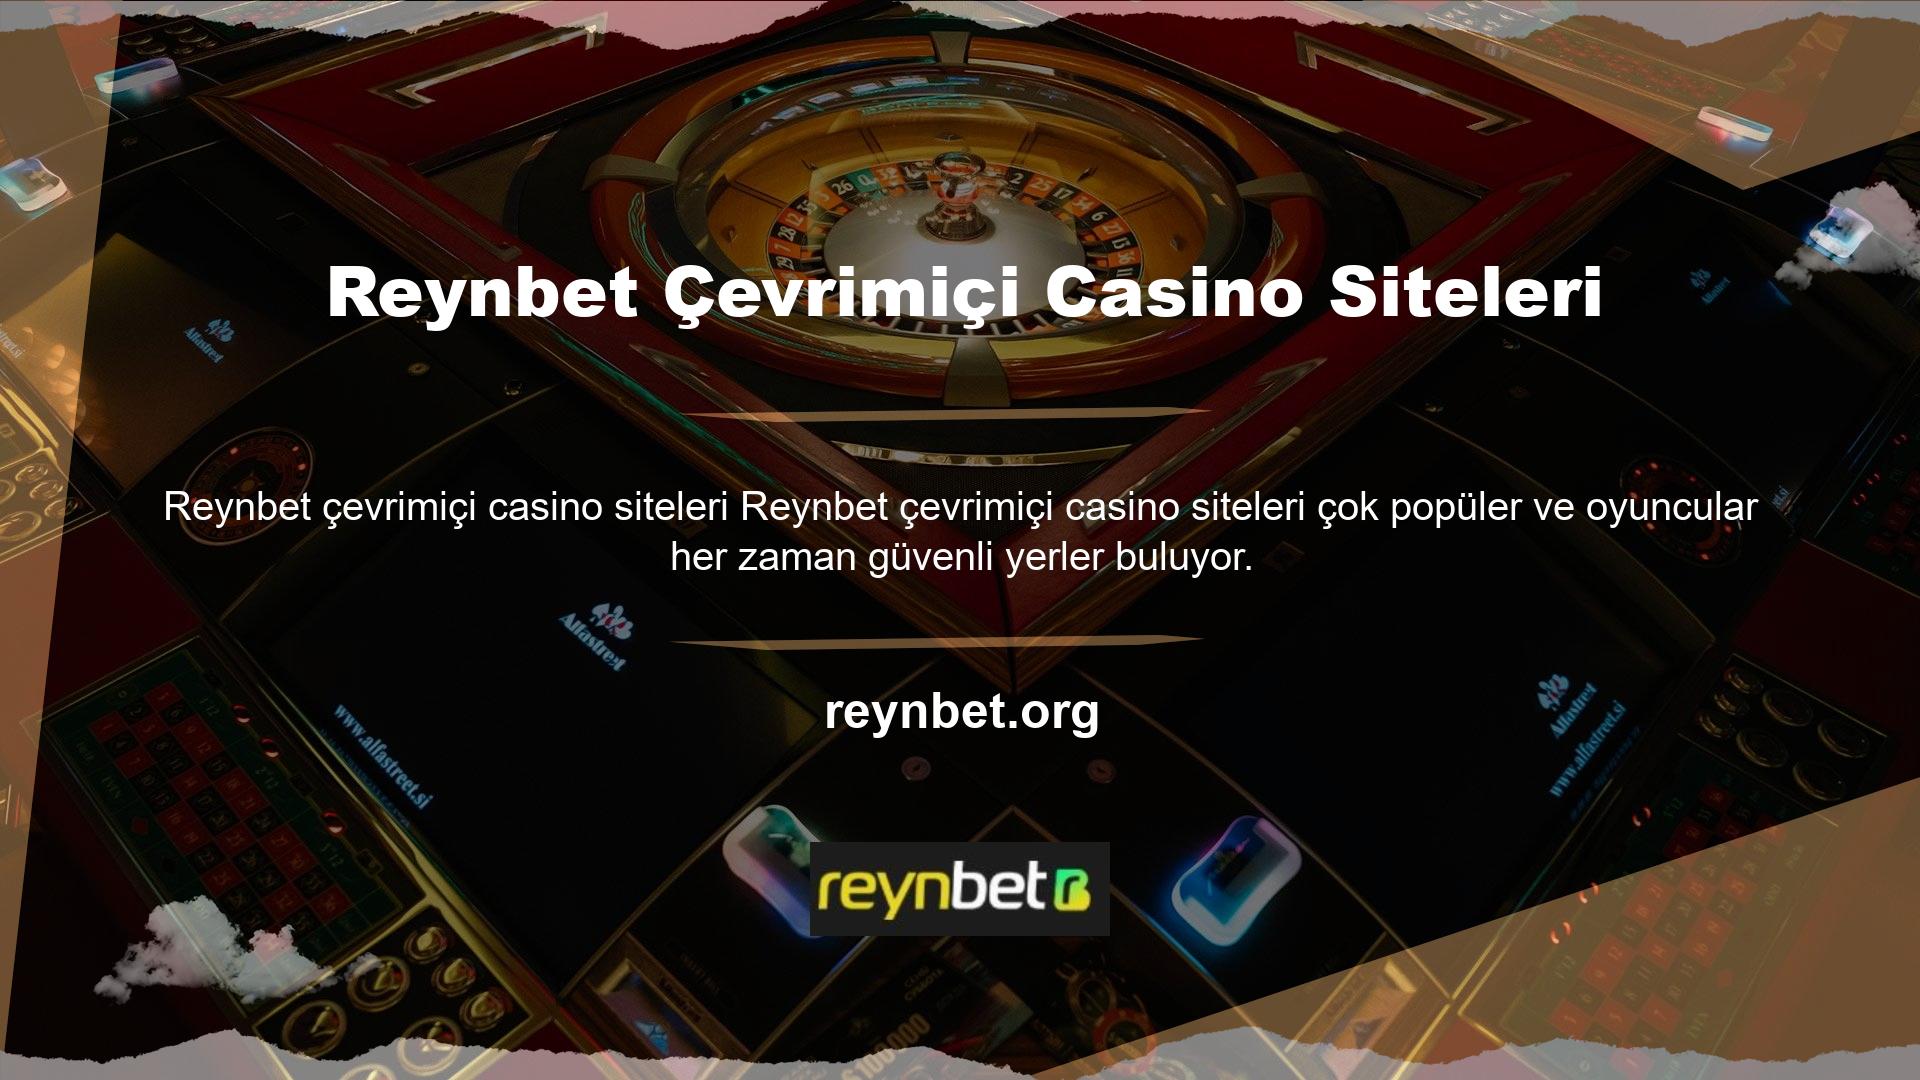 Çevrimiçi casino sitelerinin çoğalması, oyuncuların birçok seçenek arasından güvenilir bir casino sitesi bulmasını zorlaştırmıştır